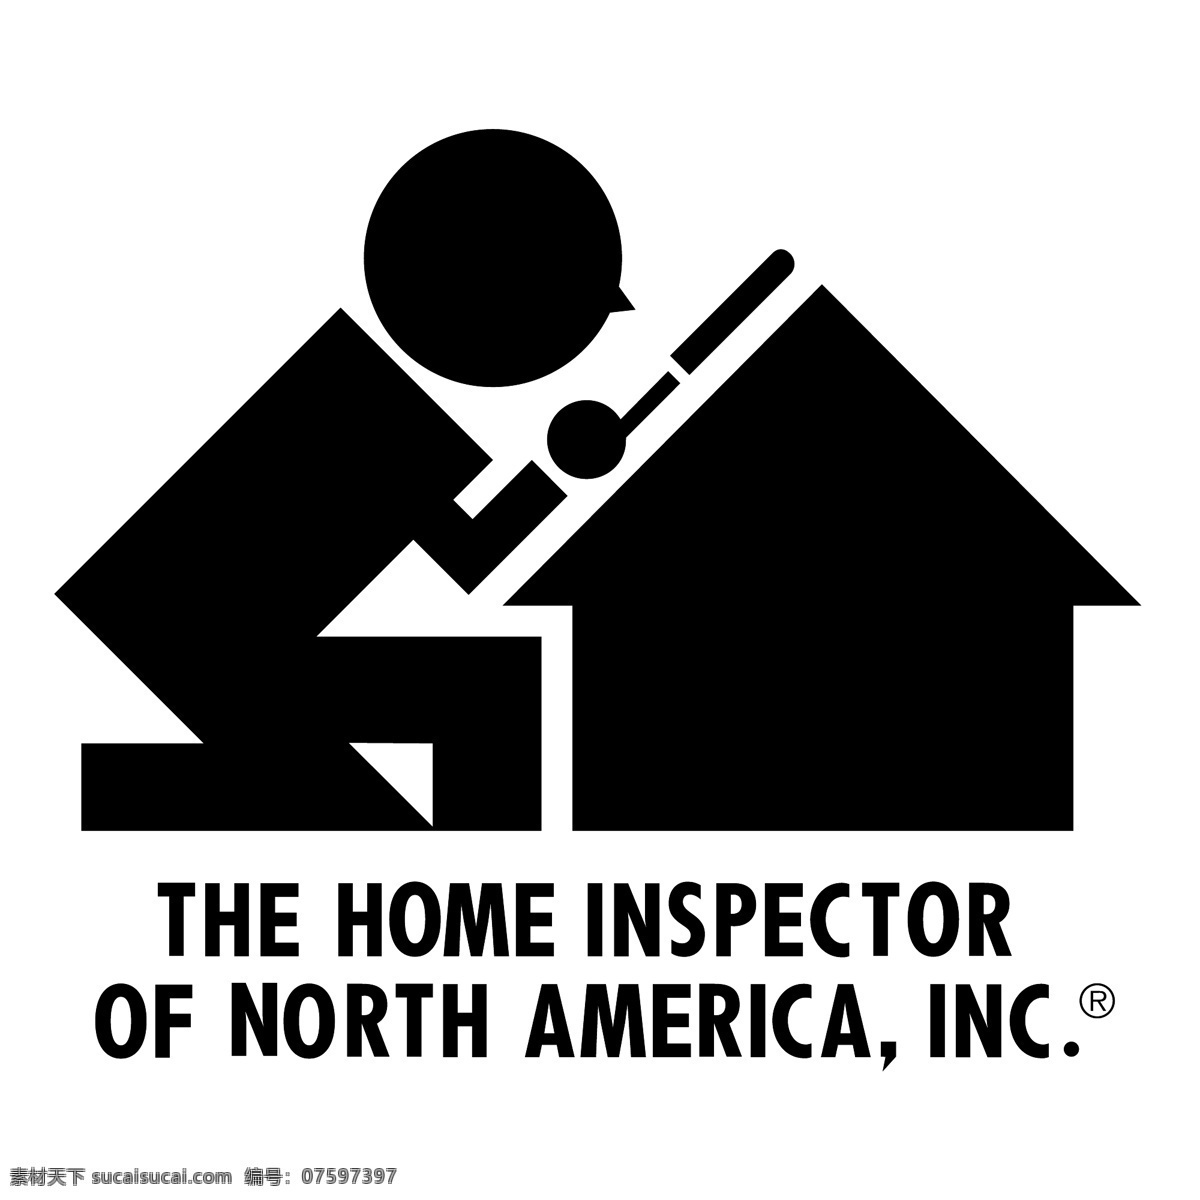 美国 北部 验 房 师 自由 北美 国 标志 psd源文件 logo设计